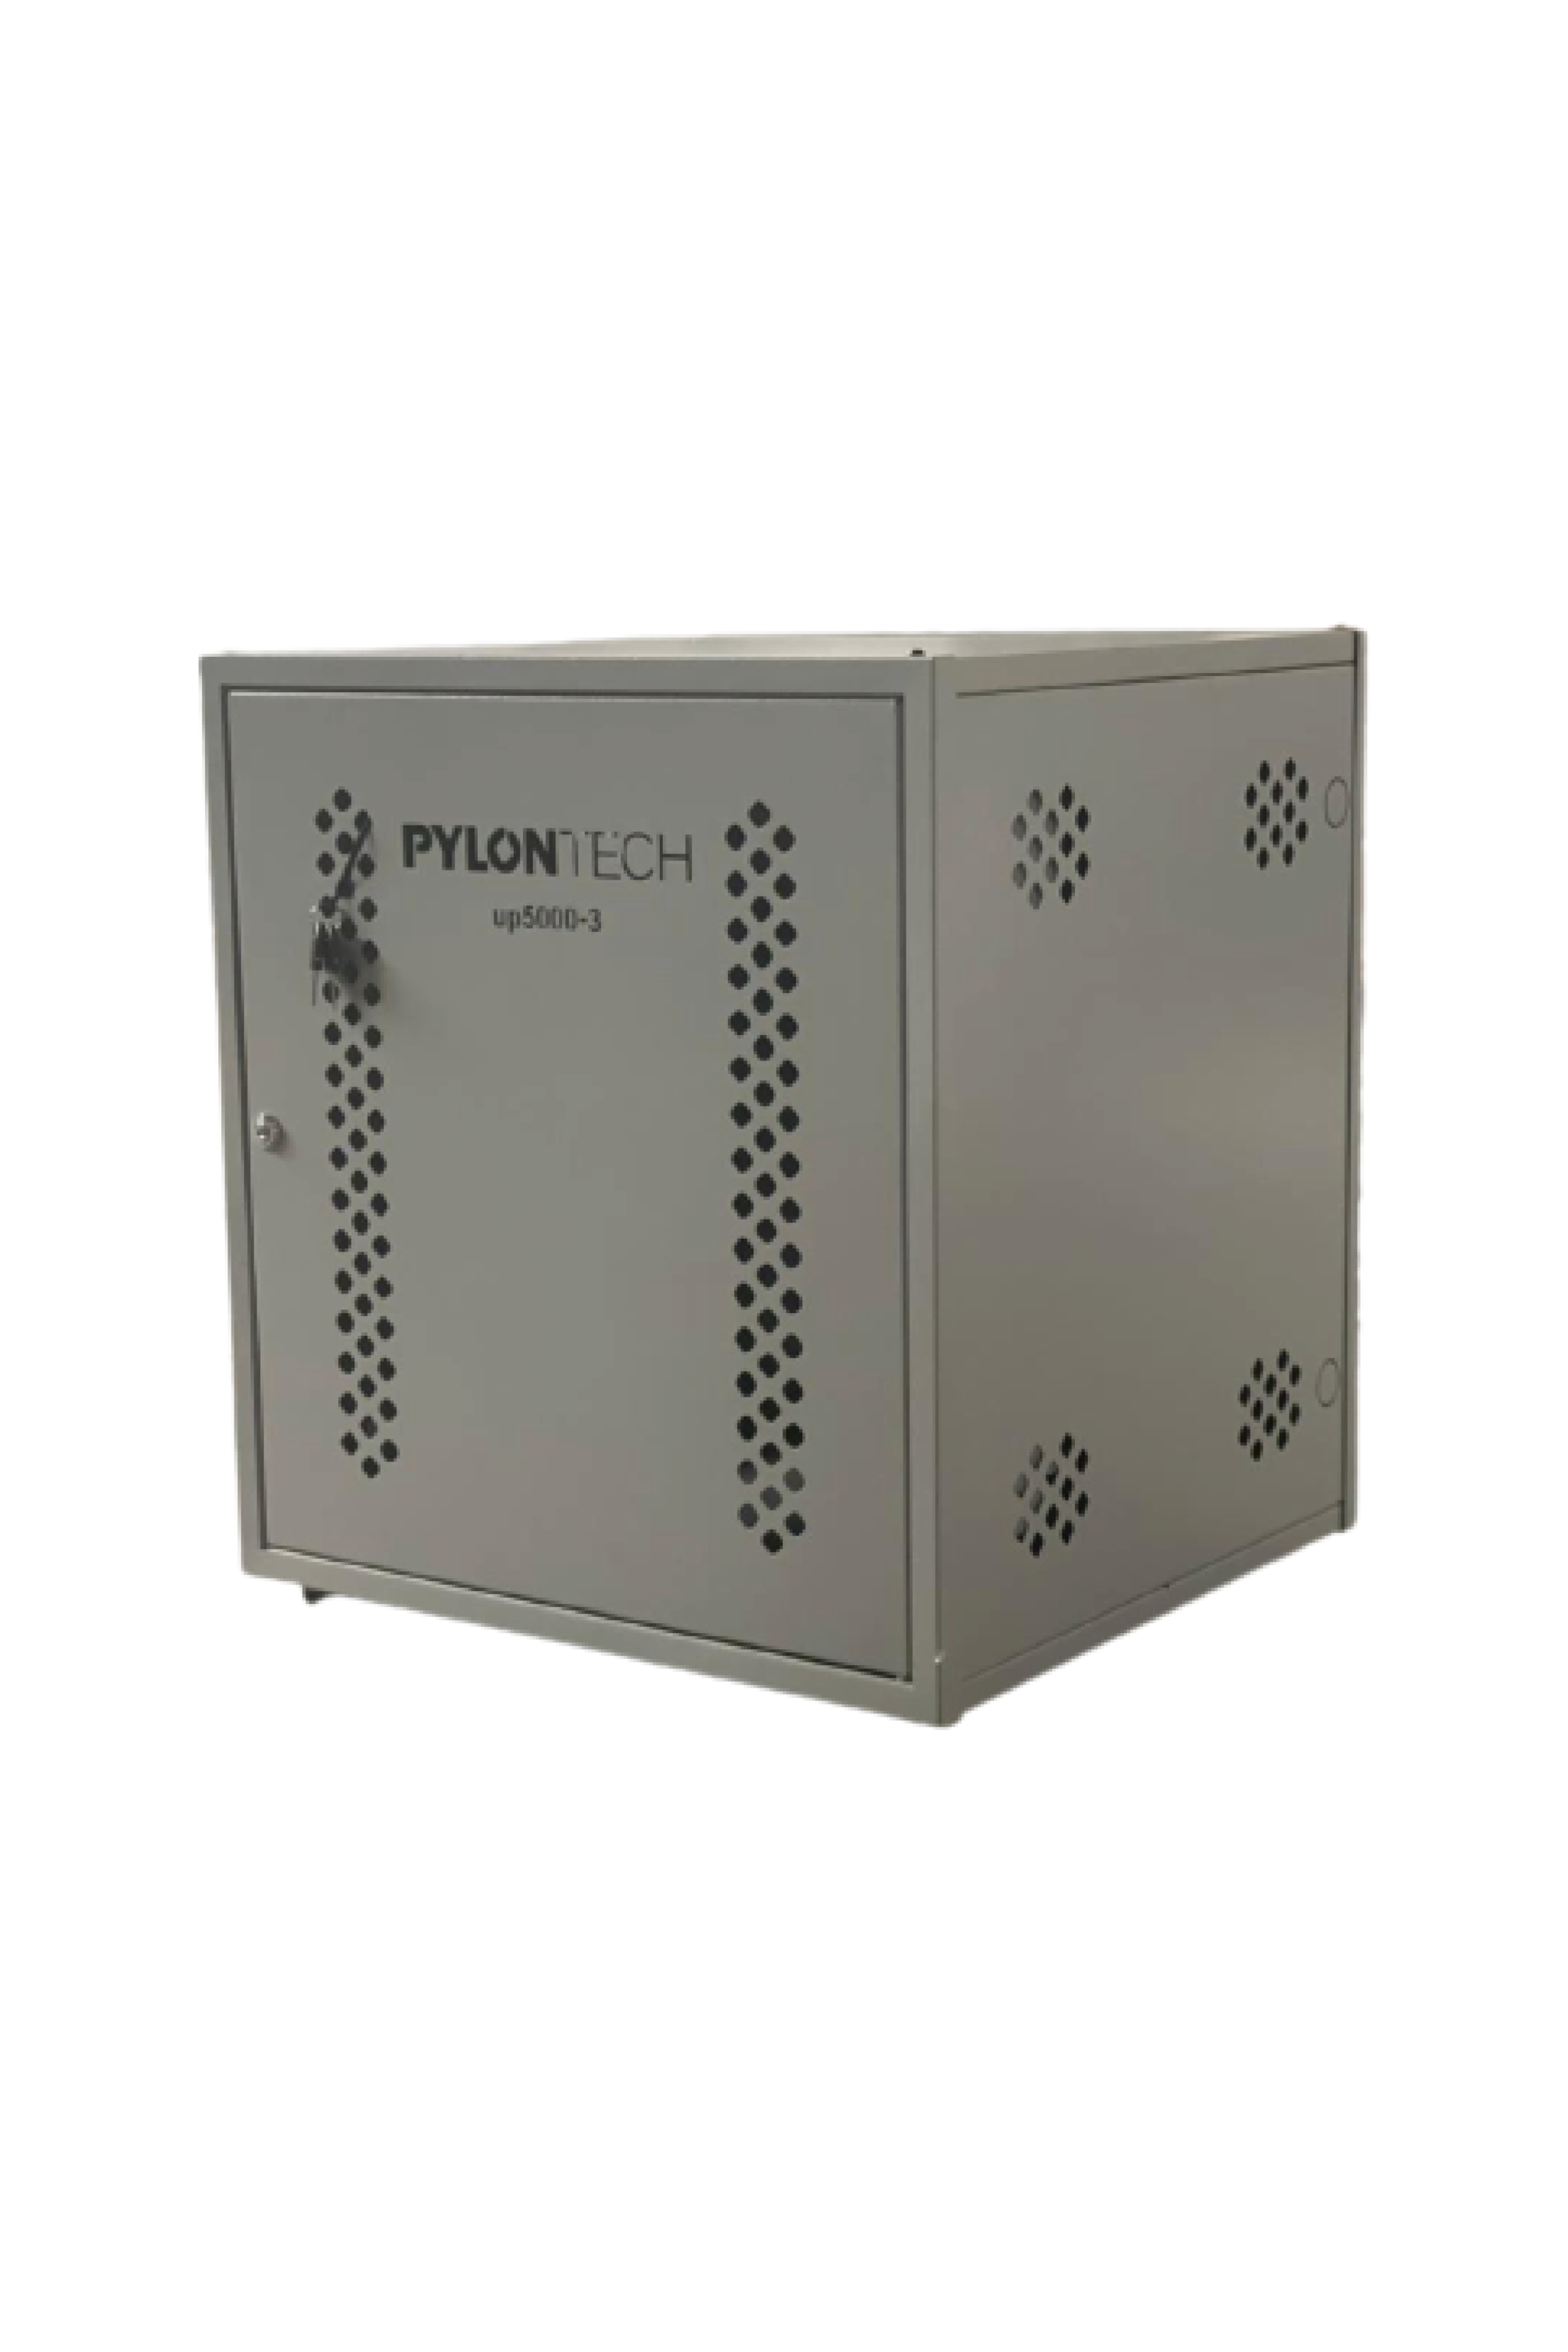 Pylontech cabinet UP5000- 3G – 3 batteries - Elite Renewable Solutions